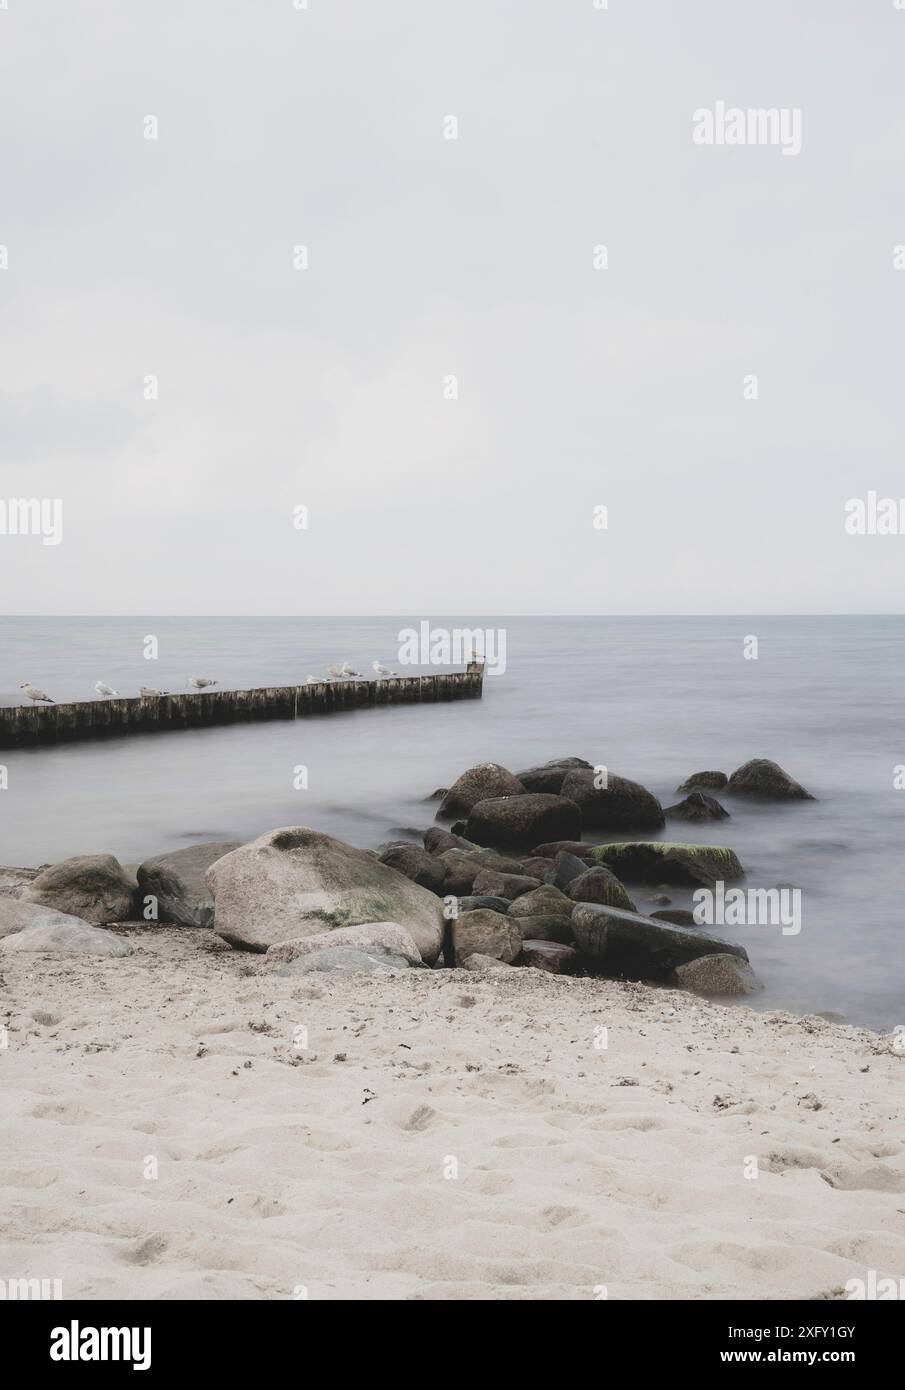 Mouettes et autres oiseaux assis sur des groynes à côté de rochers sur la plage de la mer Baltique de Kühlungsborn en Mecklembourg-Poméranie occidentale, Allemagne (exposition longue) Banque D'Images